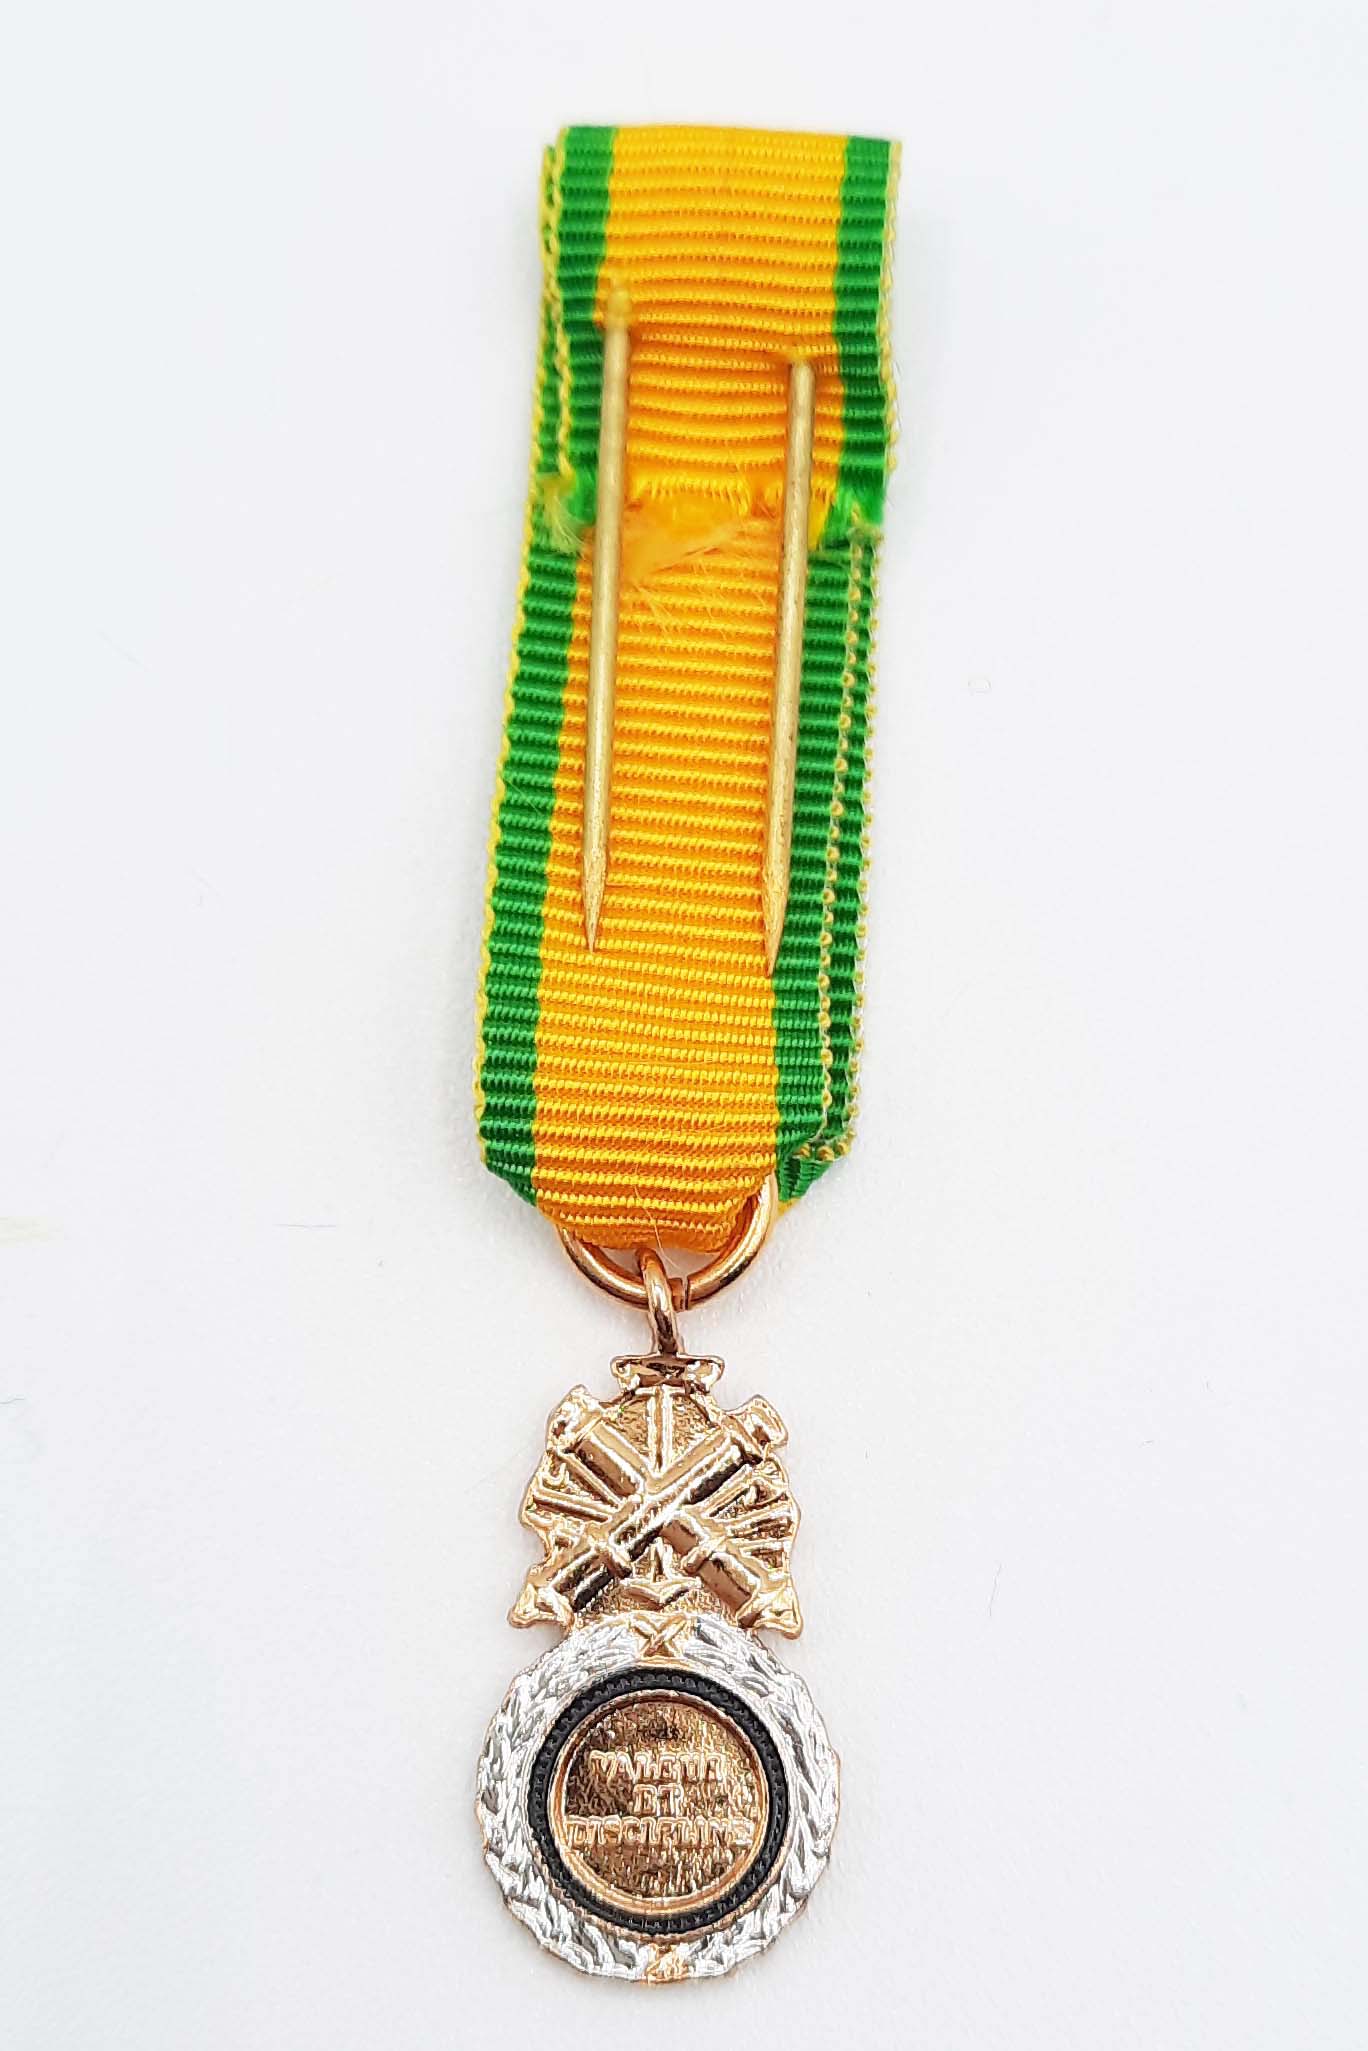 Médaille Militaire en bronze argenté miniature – Morange-Candas